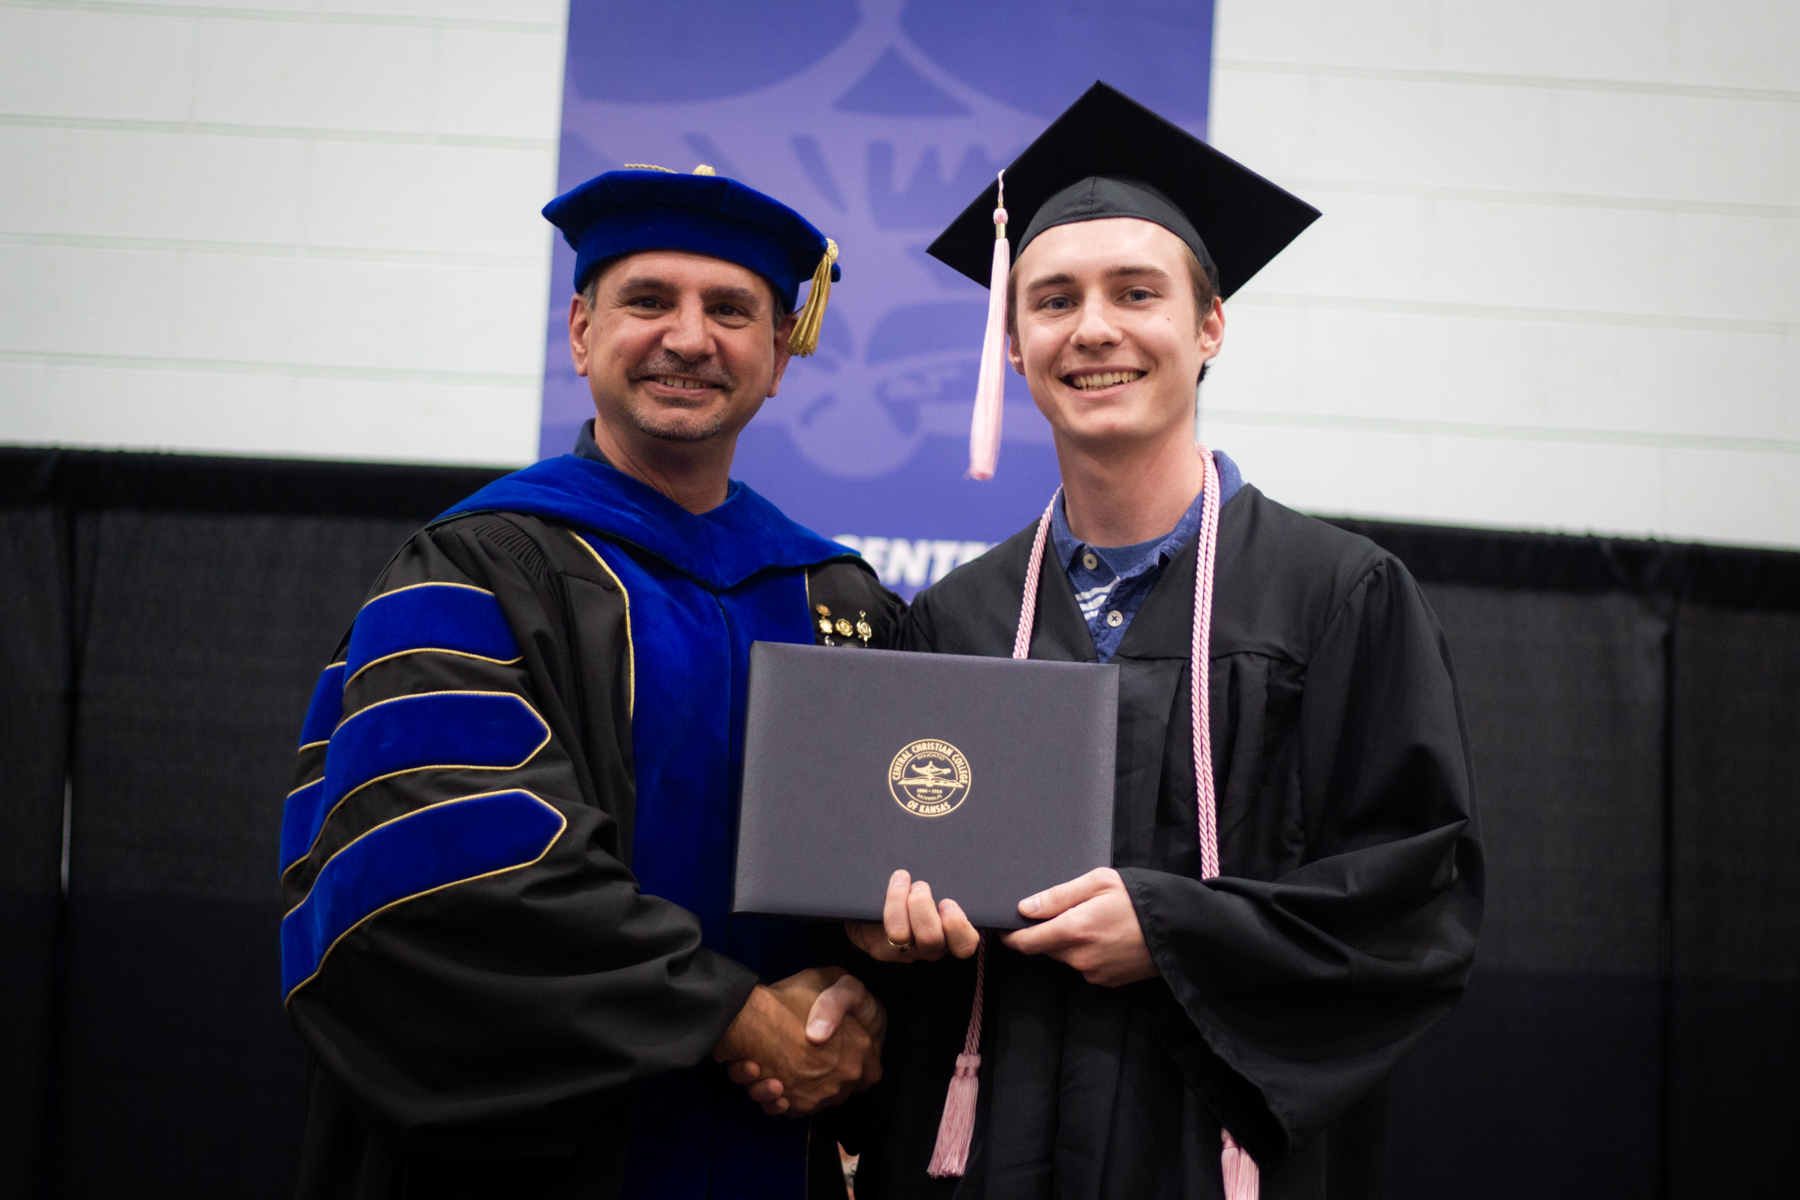 Caleb Koerperich at Graduation 2019